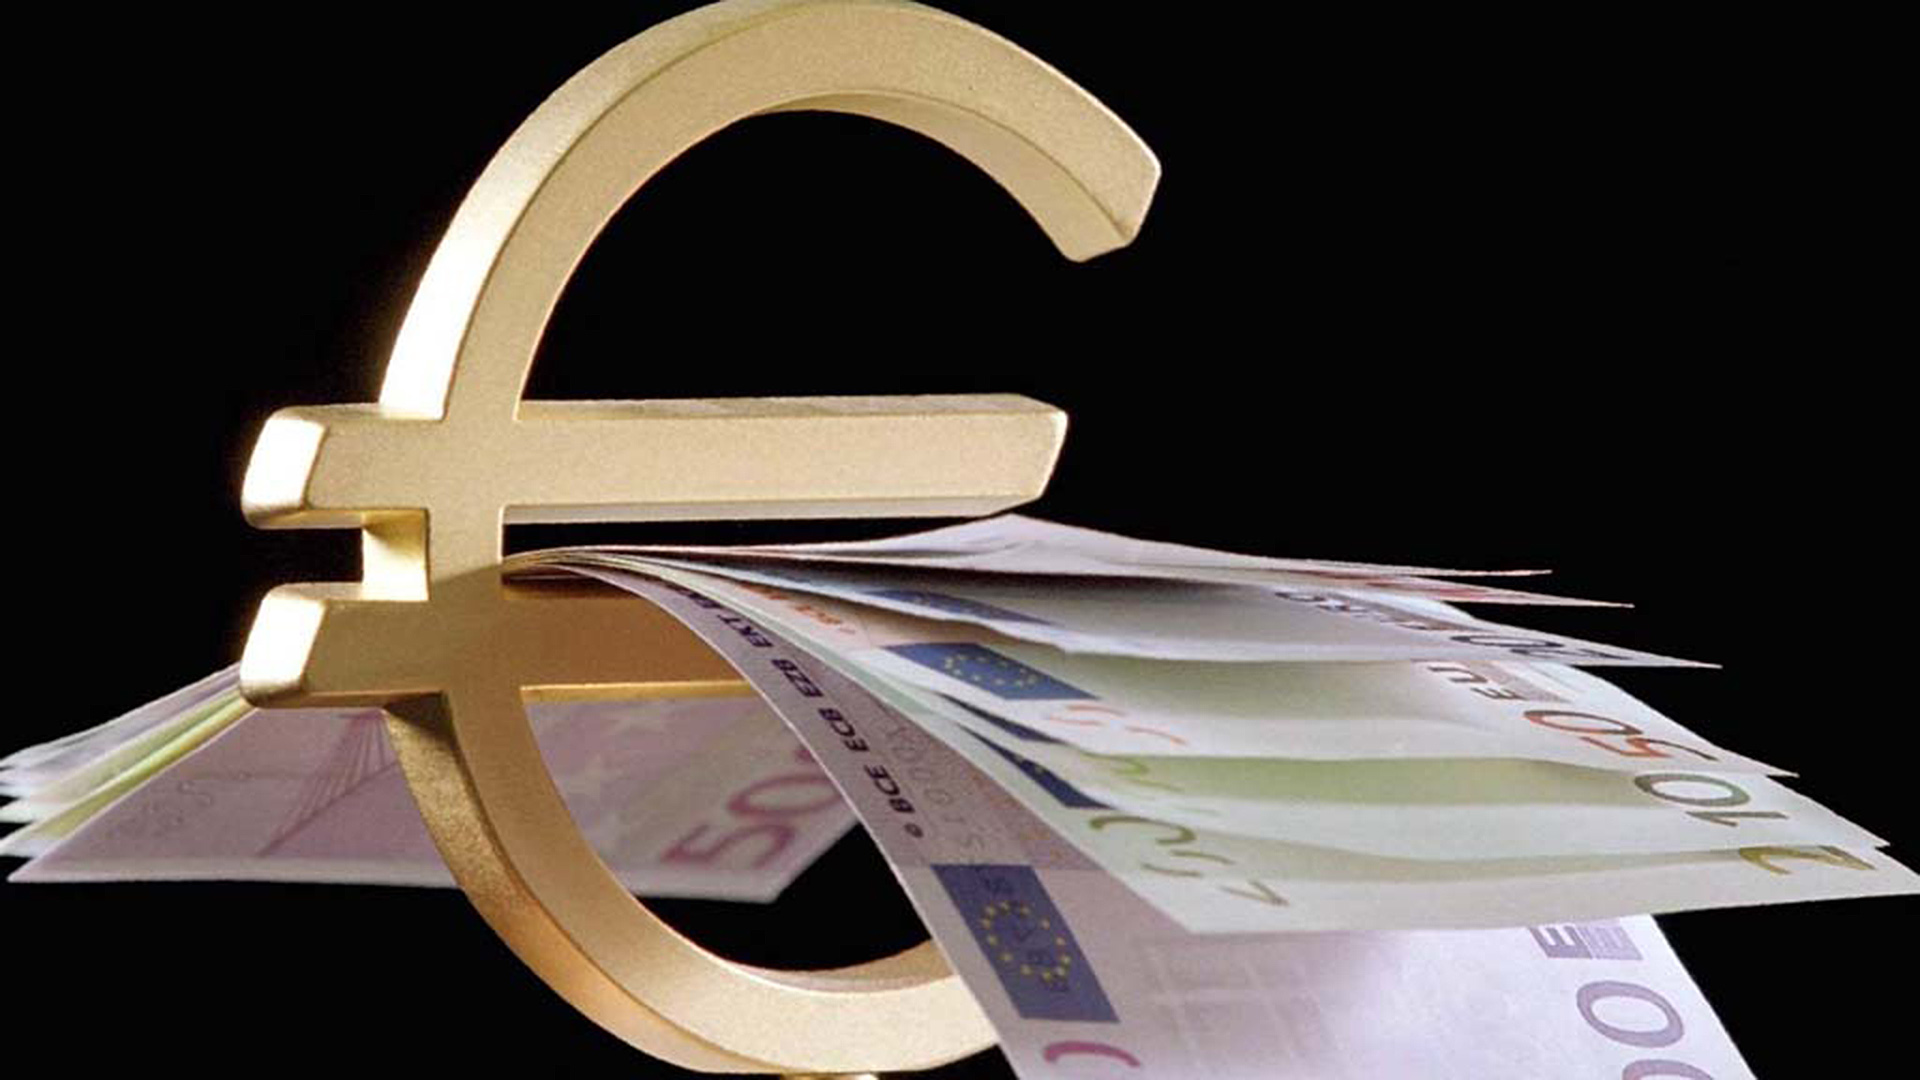 Euro-Symbol mit Geldscheinen | picture-alliance / dpa/dpaweb